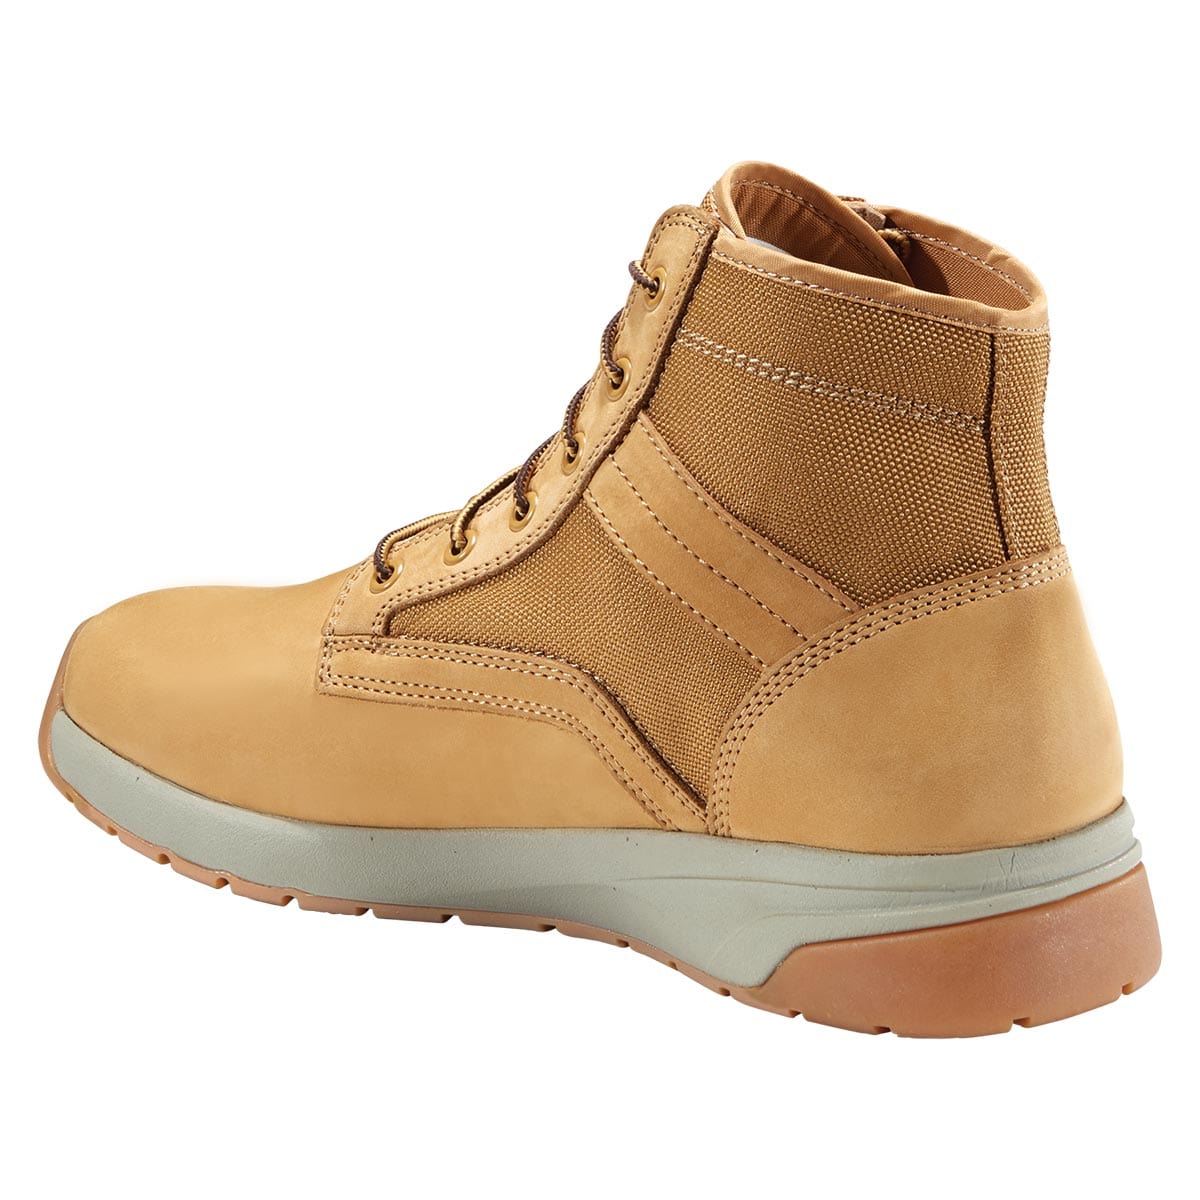 Carhartt Force 5-inch Lightweight Sneaker Boot-Wheat